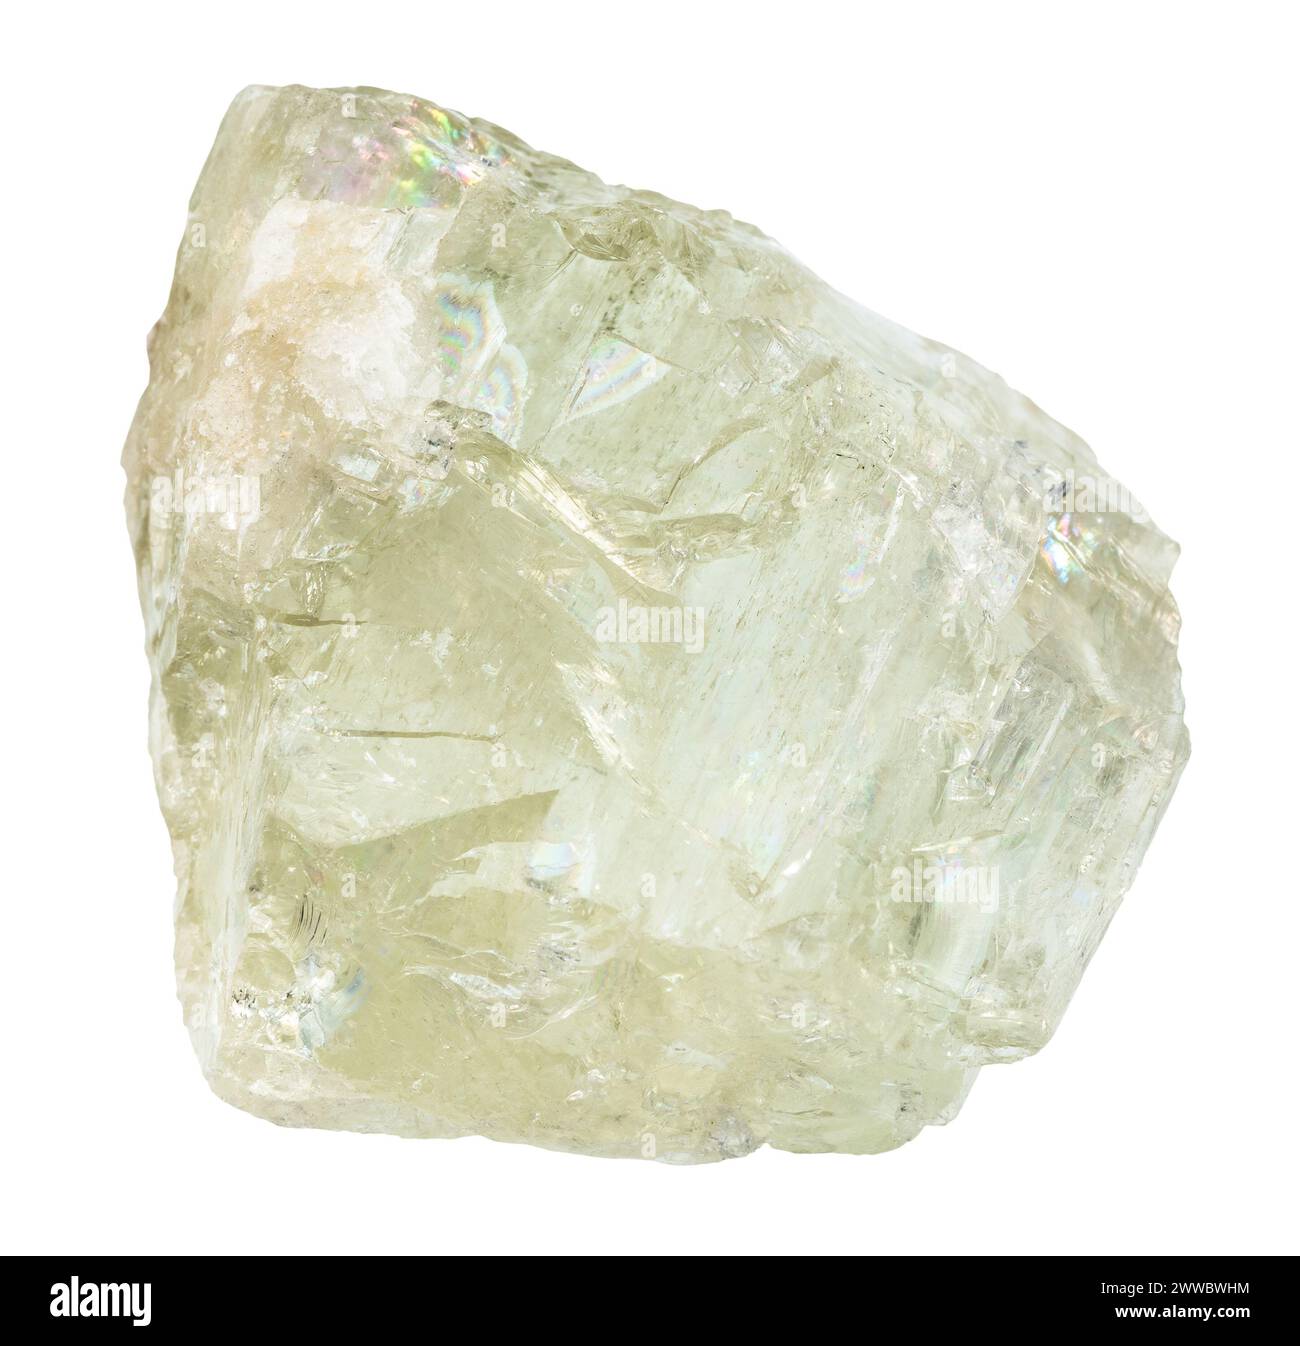 Nahaufnahme einer Probe von Naturstein aus geologischer Sammlung - roher Hiddenit-Kristall isoliert auf weißem Hintergrund aus Brasilien Stockfoto